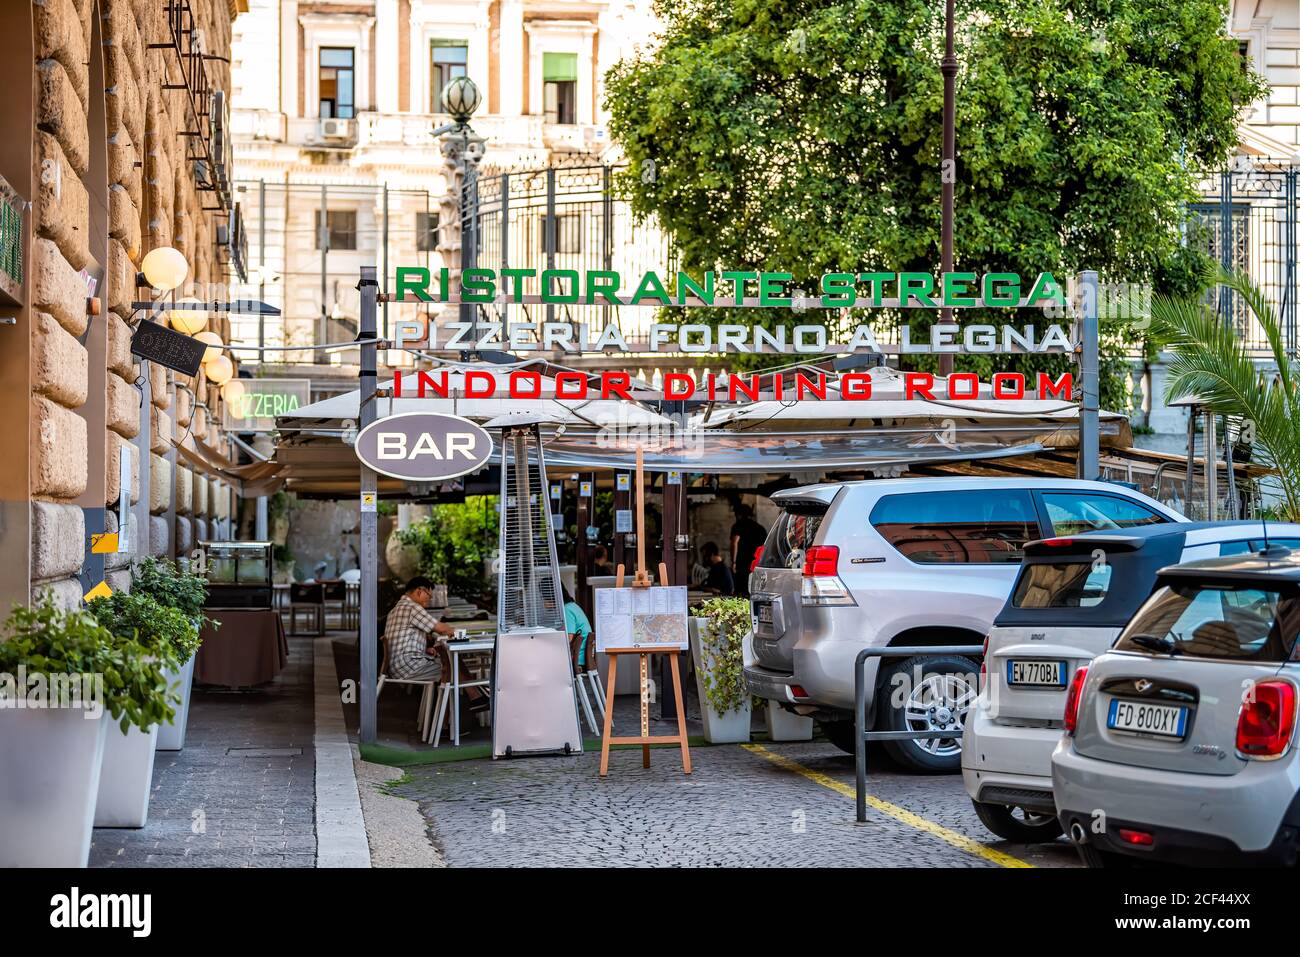 Rom, Italien - 4. September 2018: Historische Stadt am Sommertag und Schild Eingang für Bar Restaurant pizzera mit Menschen und Autos geparkt Stockfoto